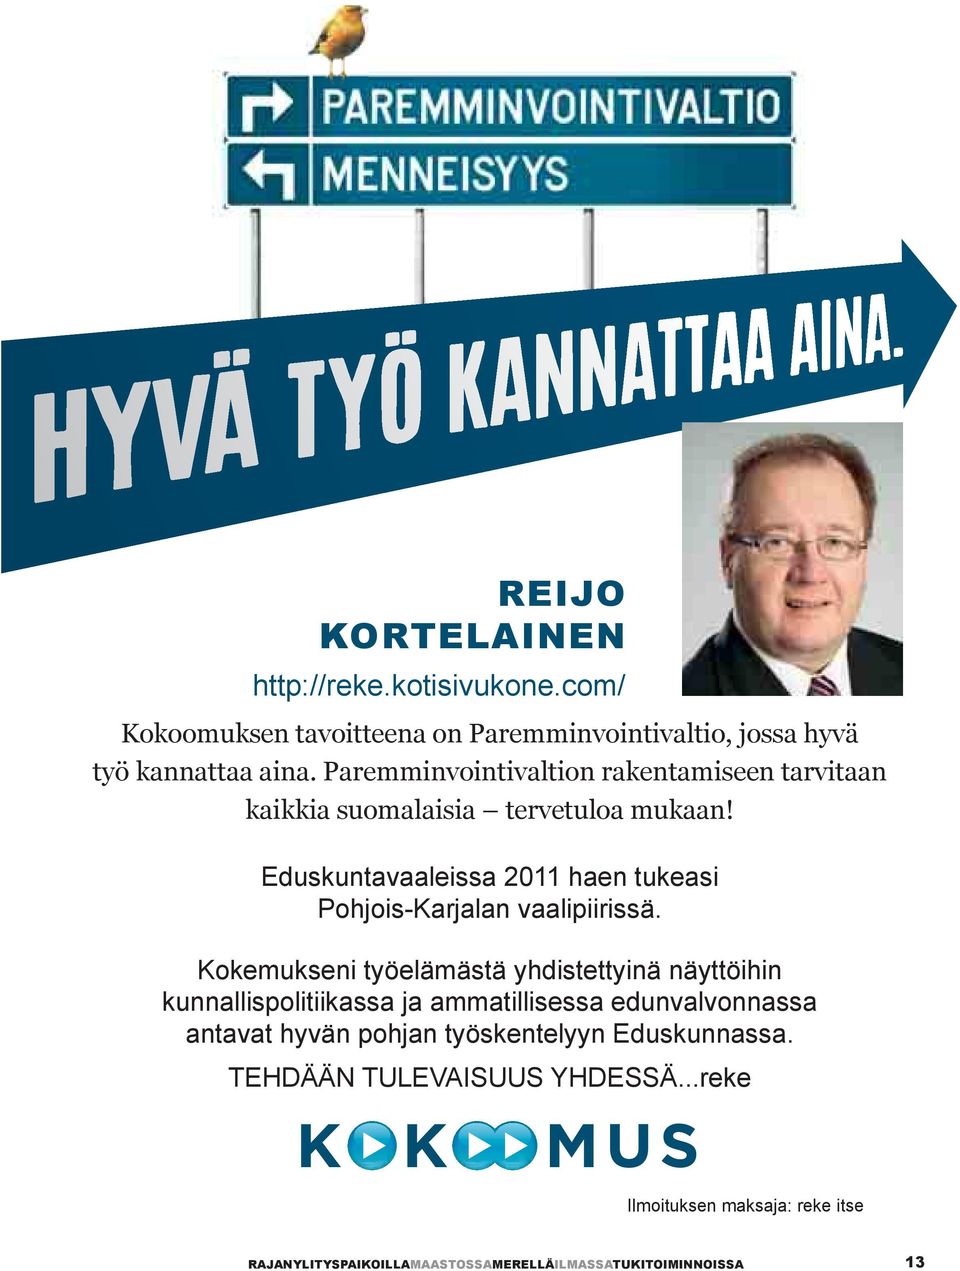 Eduskuntavaaleissa 2011 haen tukeasi Pohjois-Karjalan vaalipiirissä.